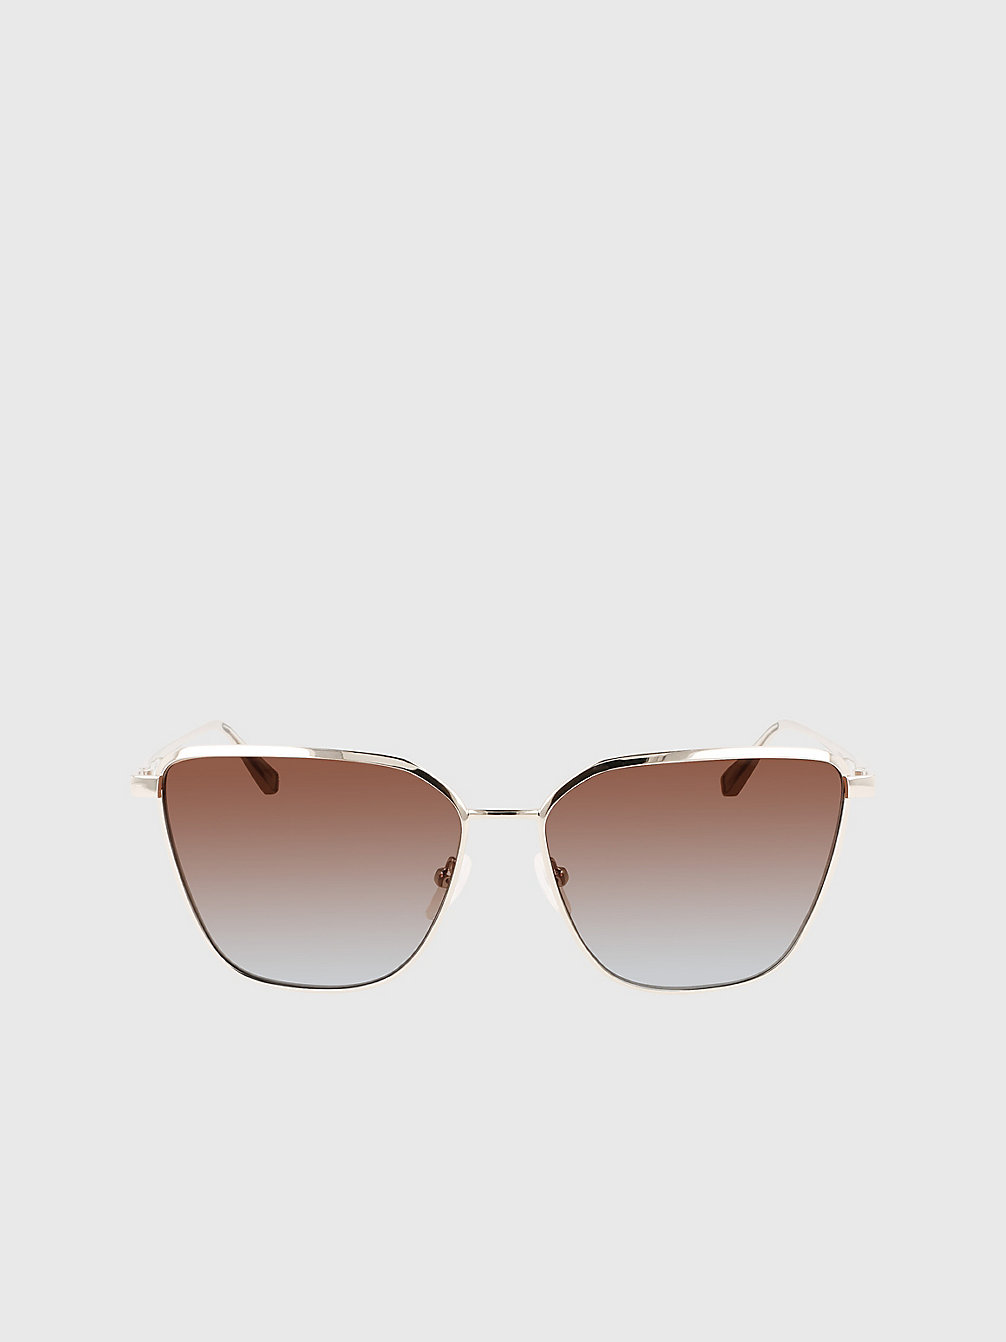 SILVER Square Sunglasses Ck22104s undefined women Calvin Klein